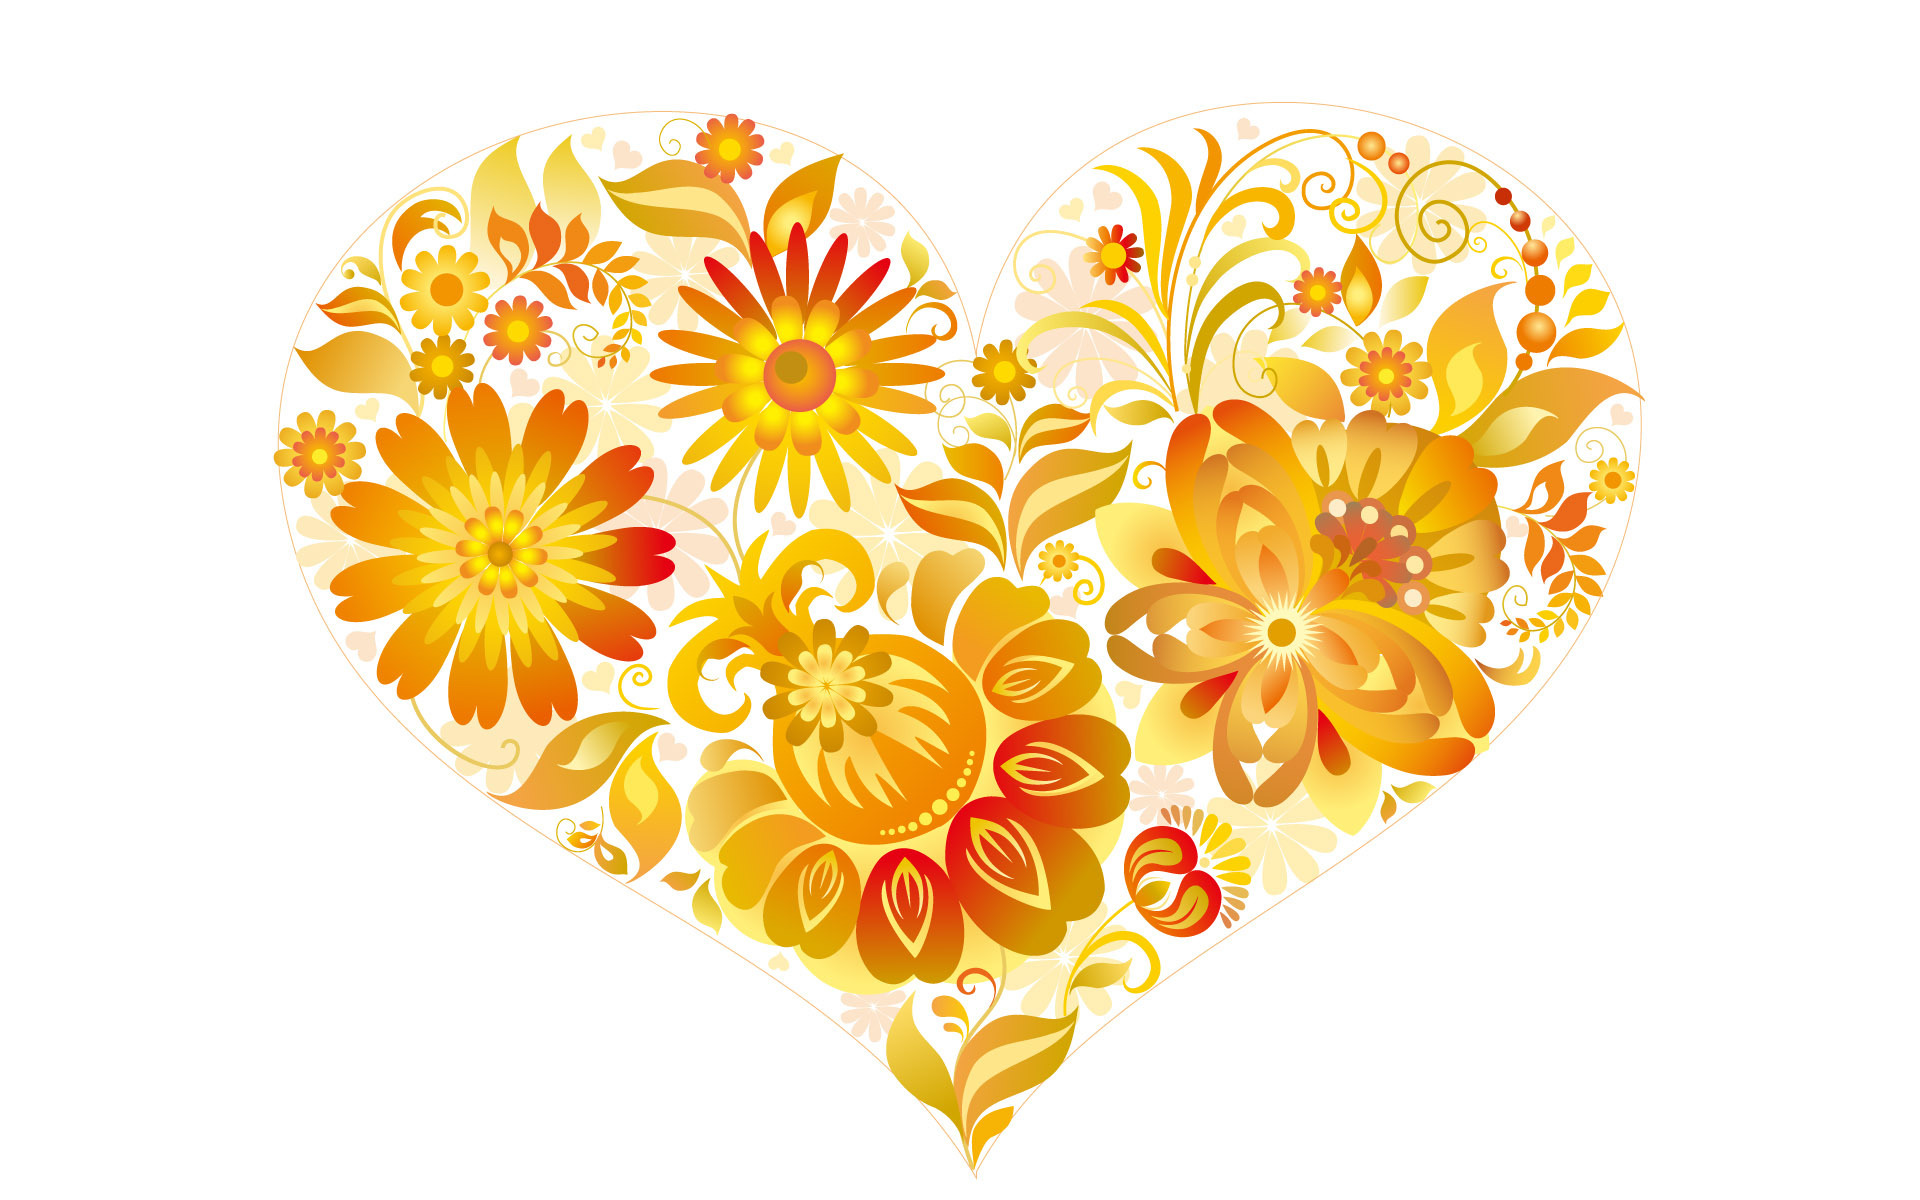 Love Heart with Flowers3313610081 - Love Heart with Flowers - with, Love, Heart, Flowers, Design